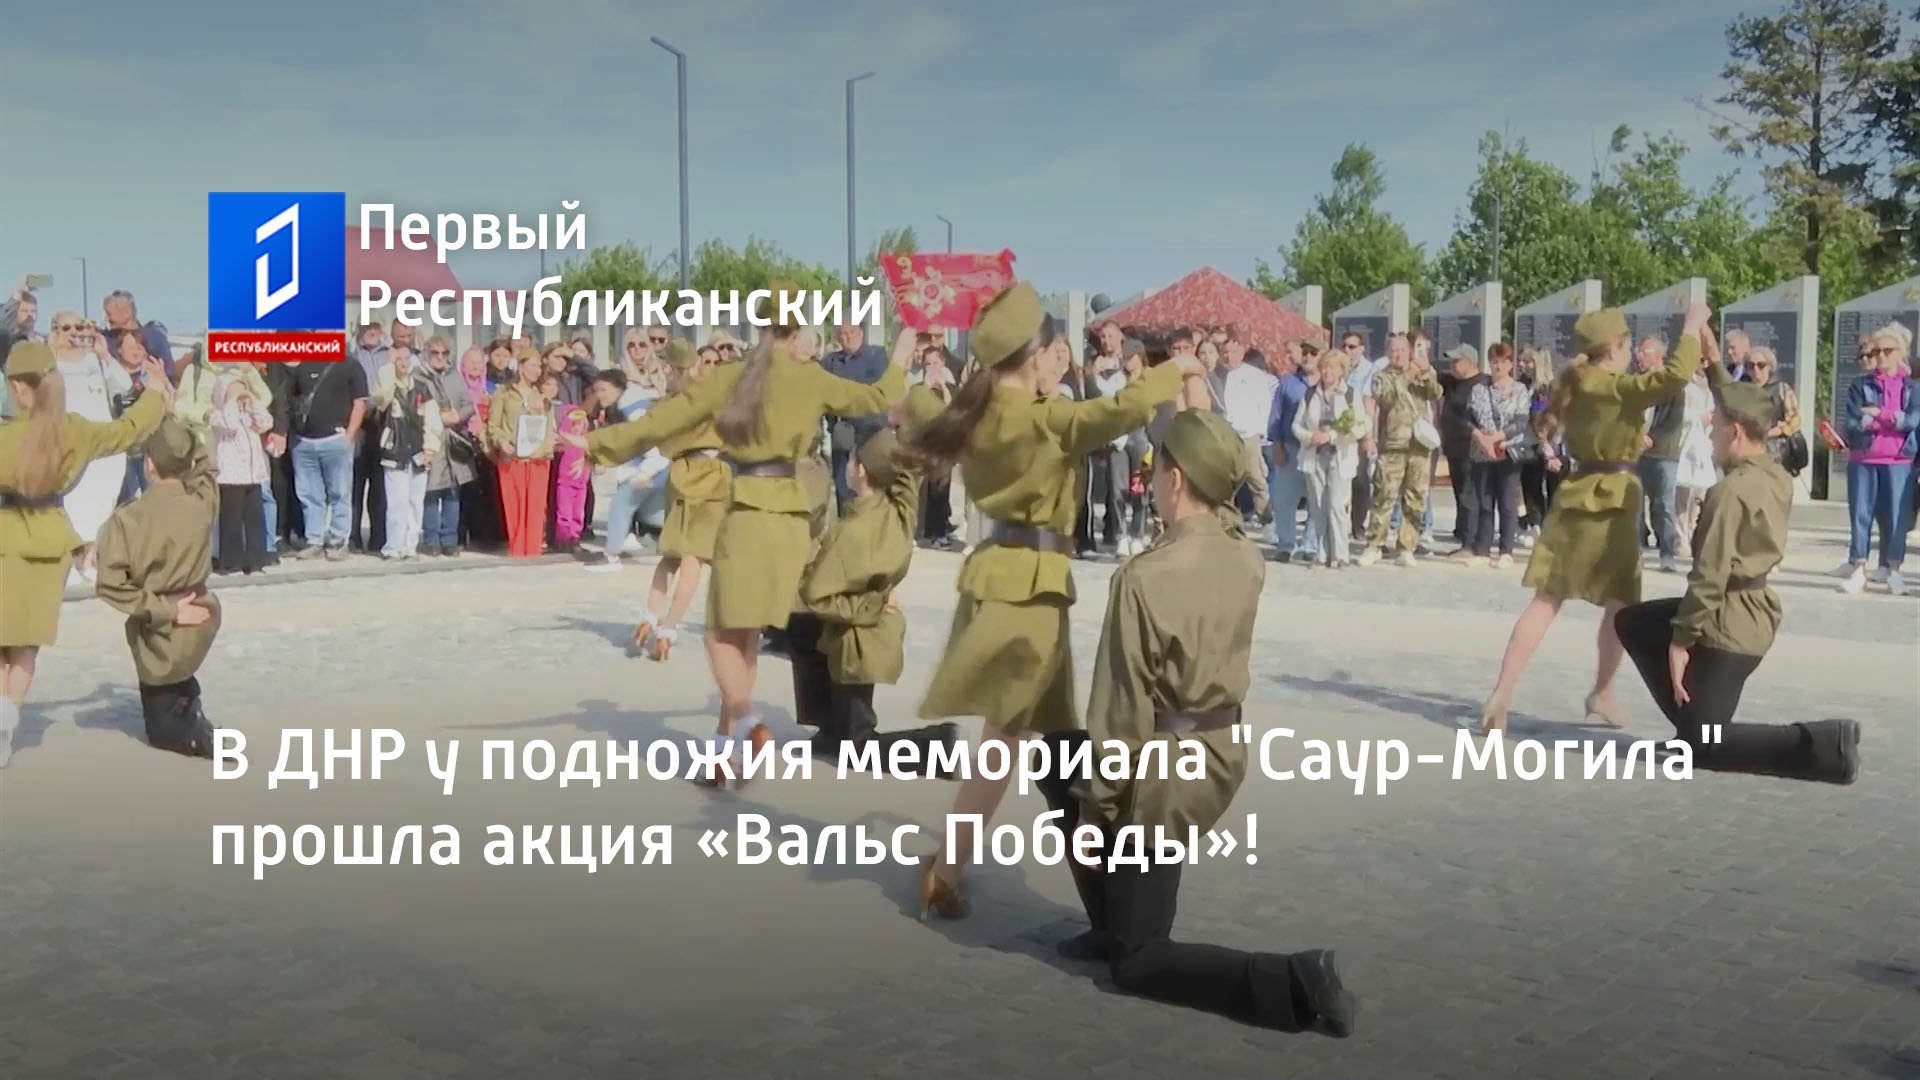 В ДНР у подножия мемориала "Саур-Могила" прошла акция «Вальс Победы»!